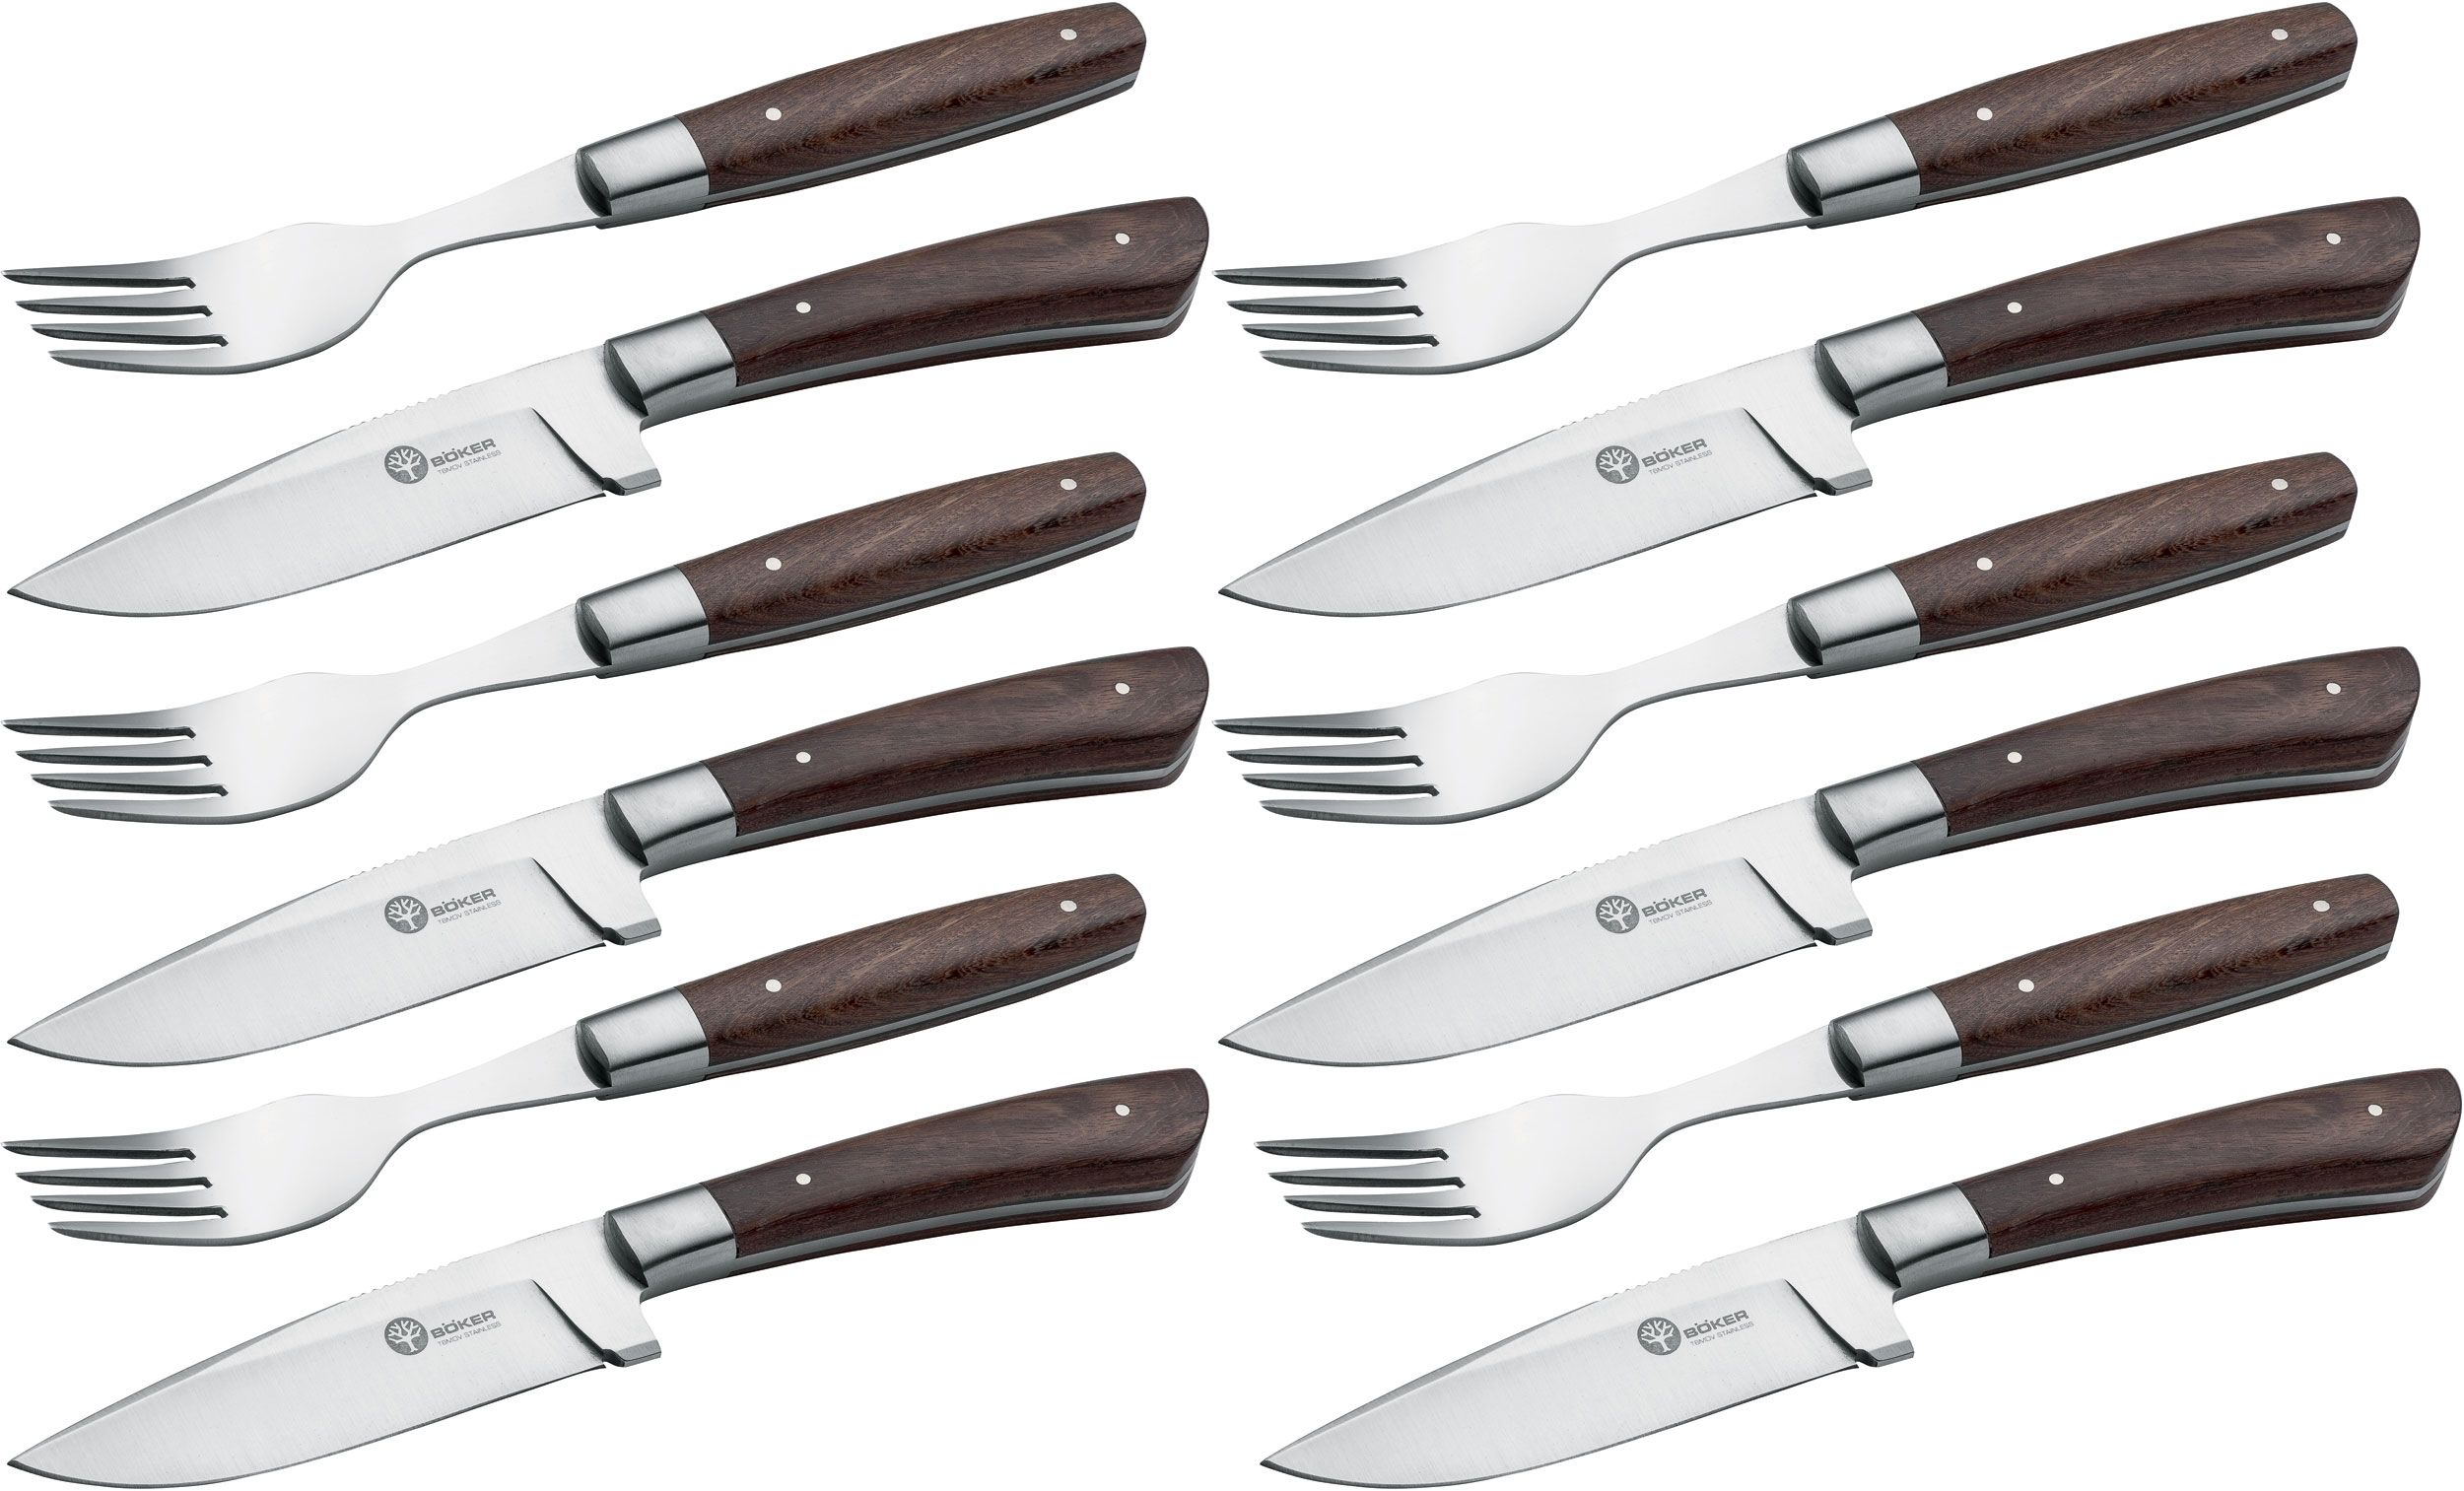 Steak knife and fork set, 12-piece